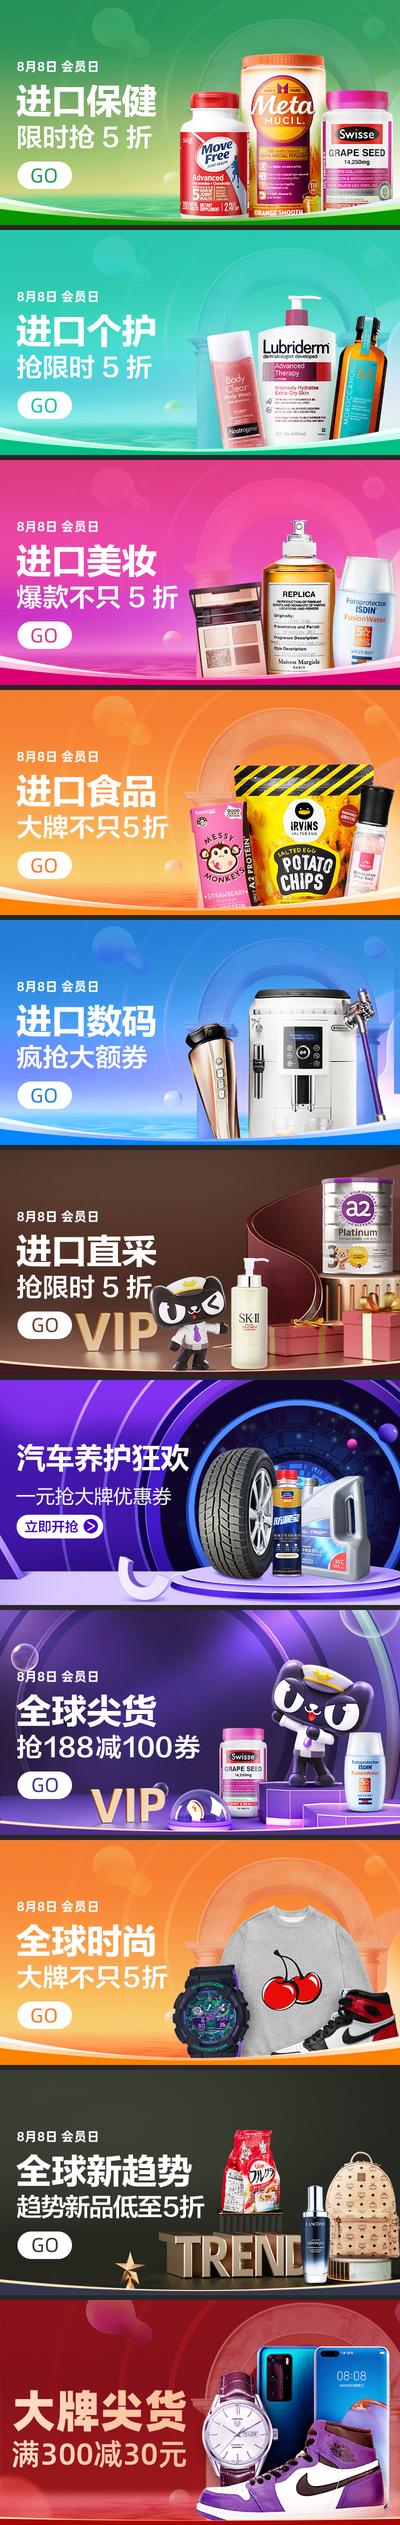 南门网 电商海报 淘宝海报 banner 保健 美妆 进口食品 数码